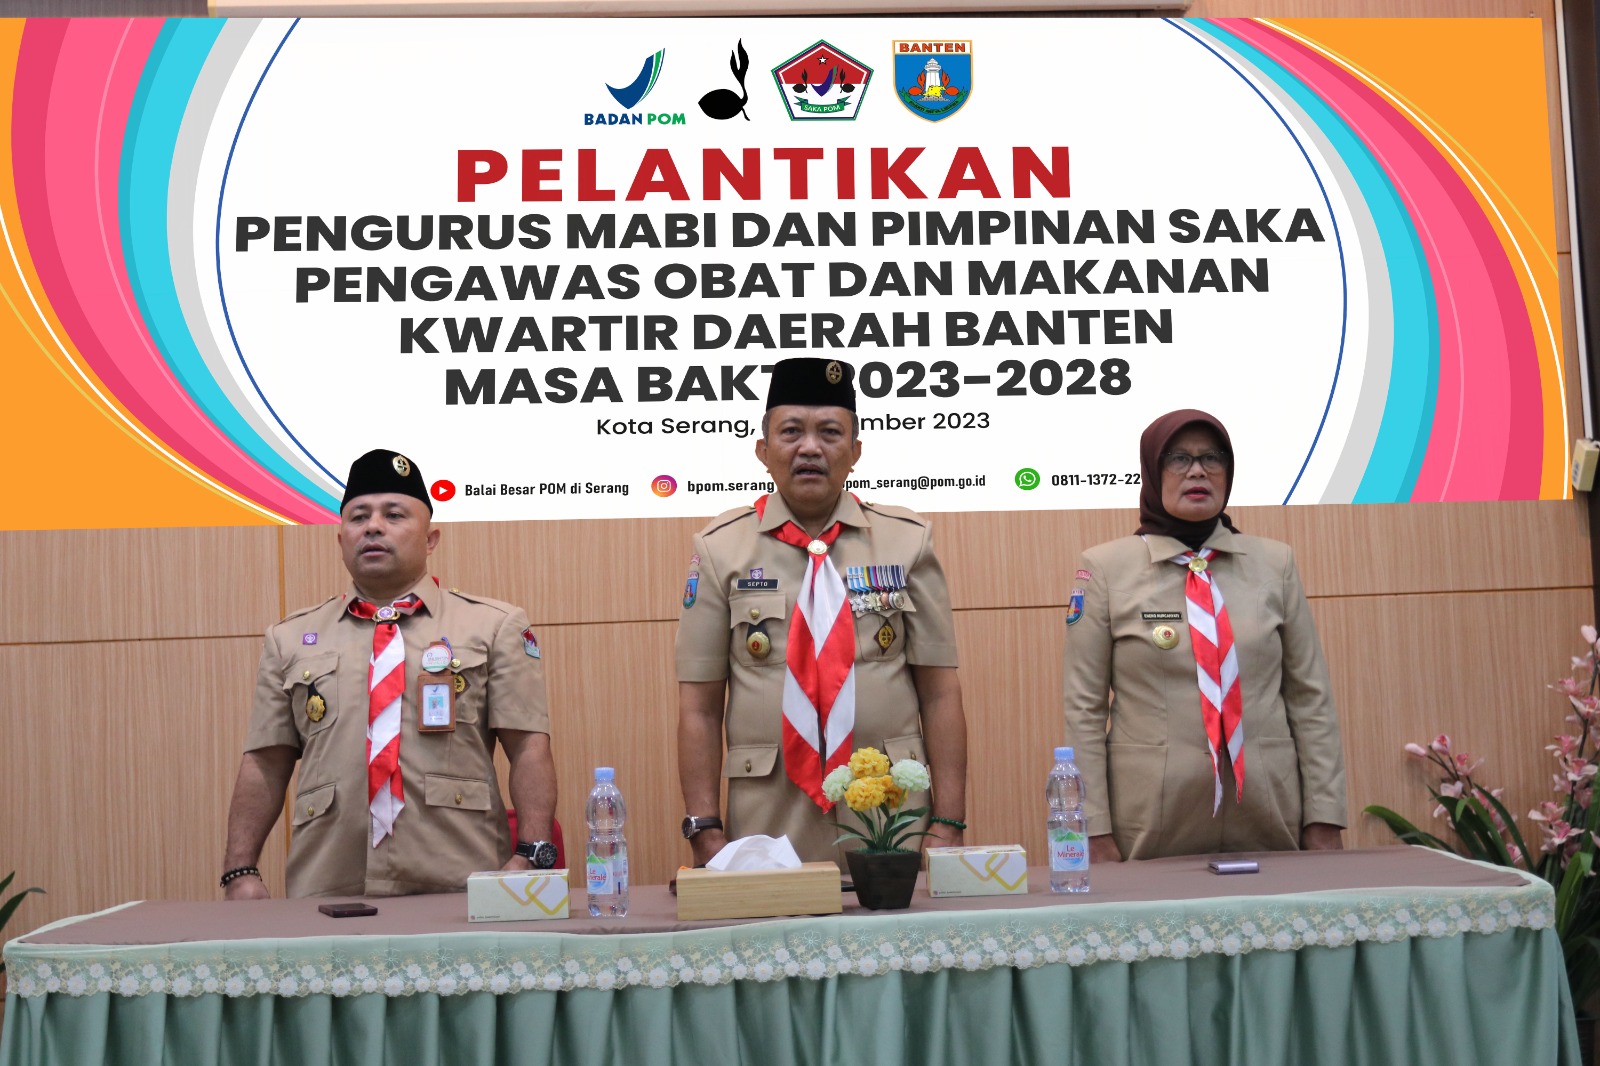 Pelantikan Pengurus MABI SAKA dan PIN SAKA POM Daerah Banten